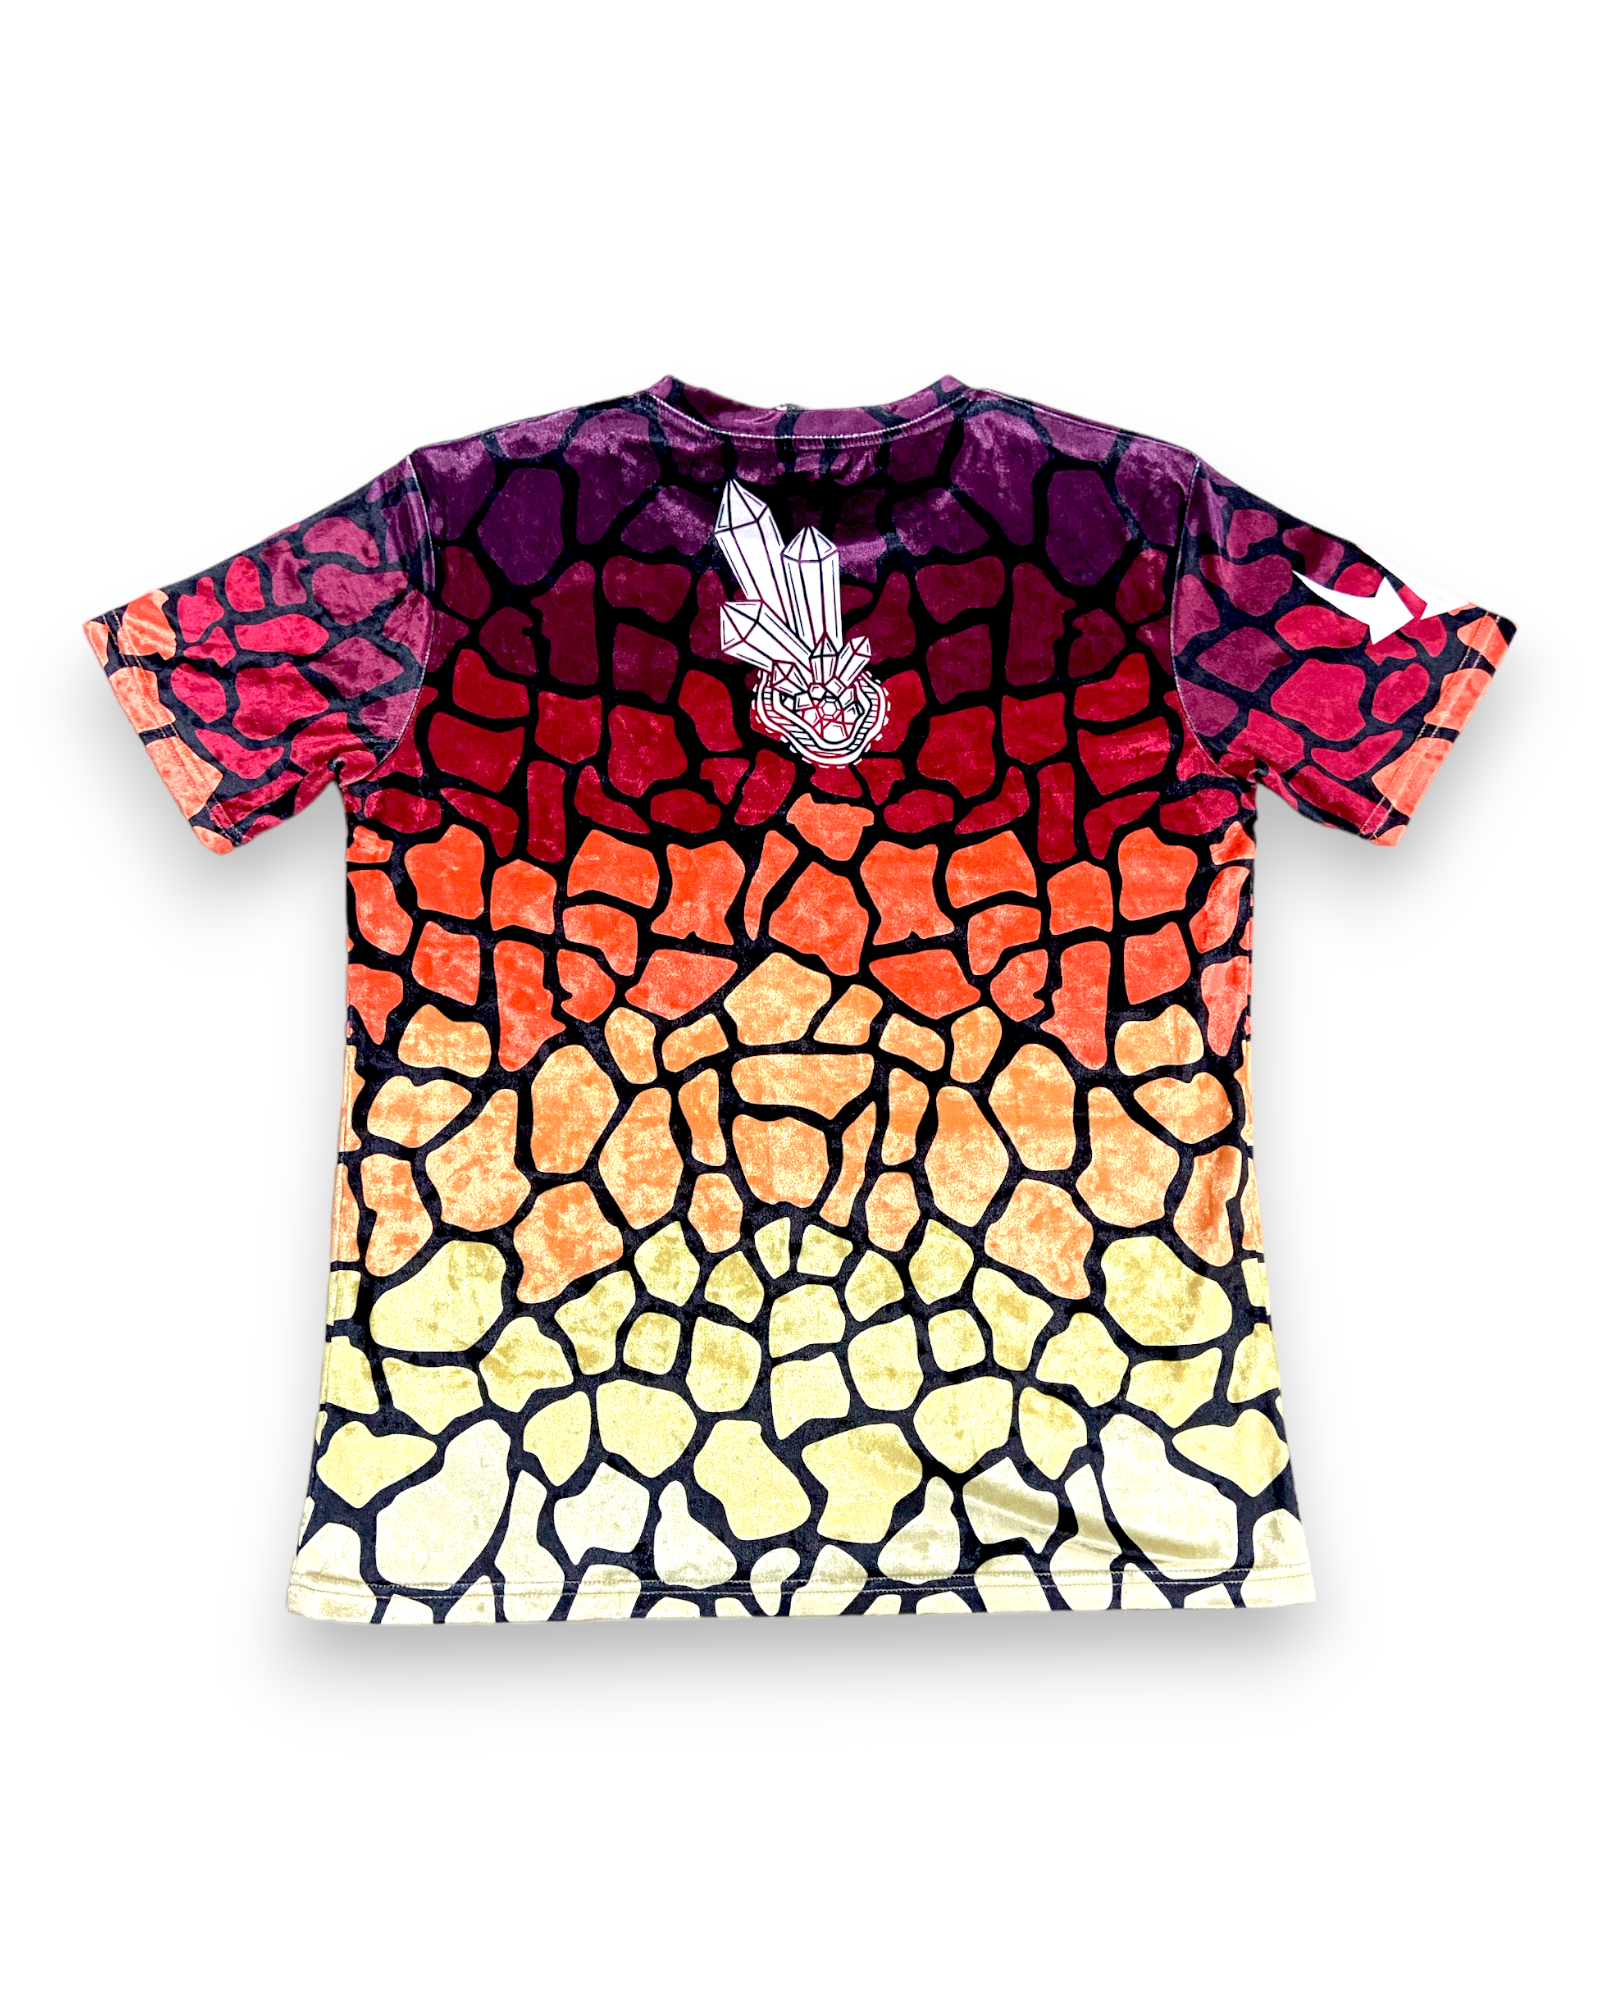 Crystaline Giraffe Crushed Velvet T-Shirt